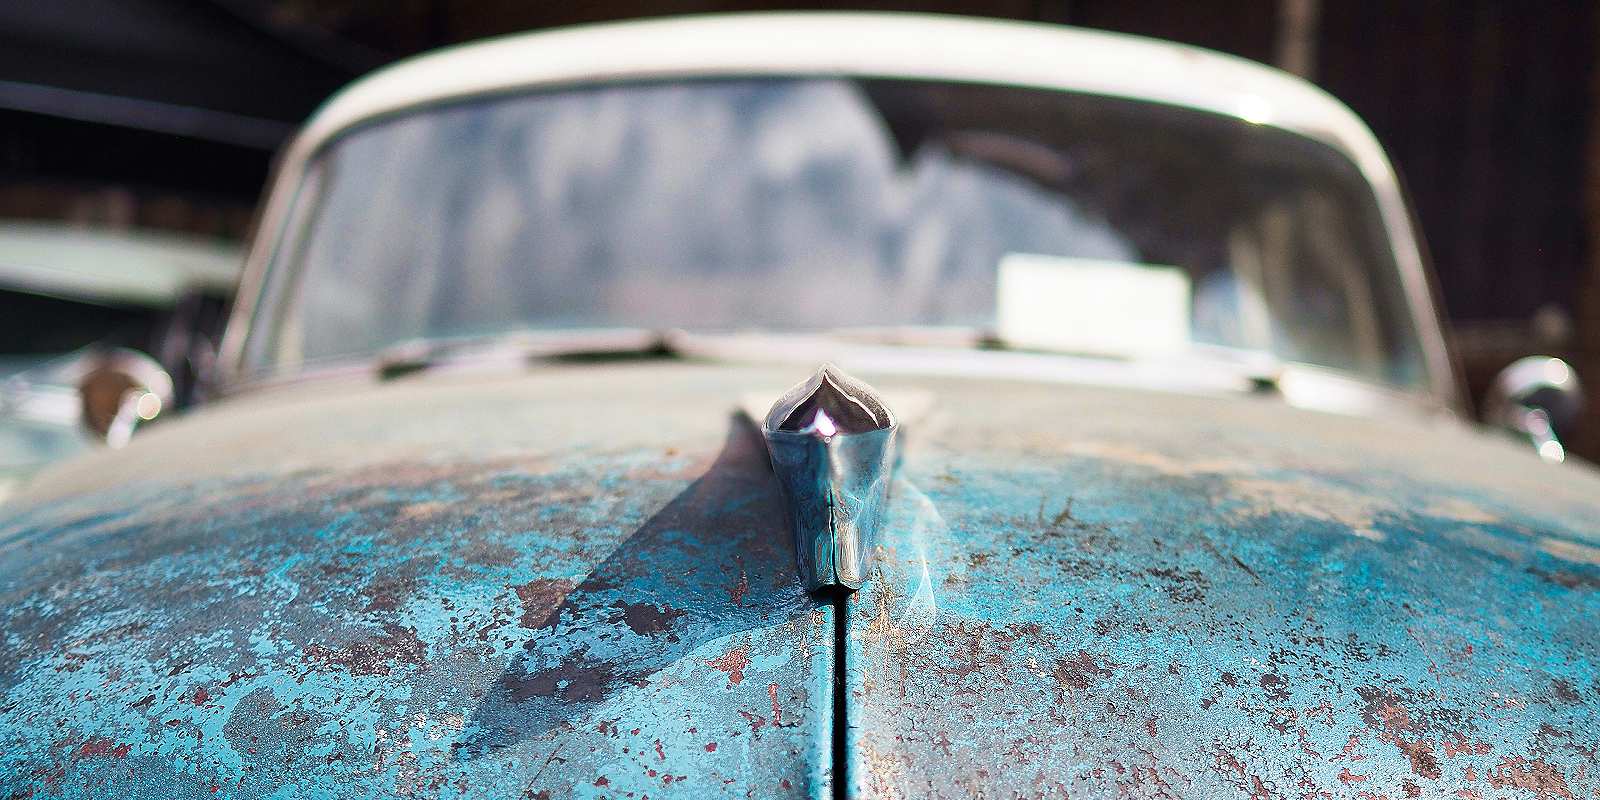 Rust repair on car фото 28